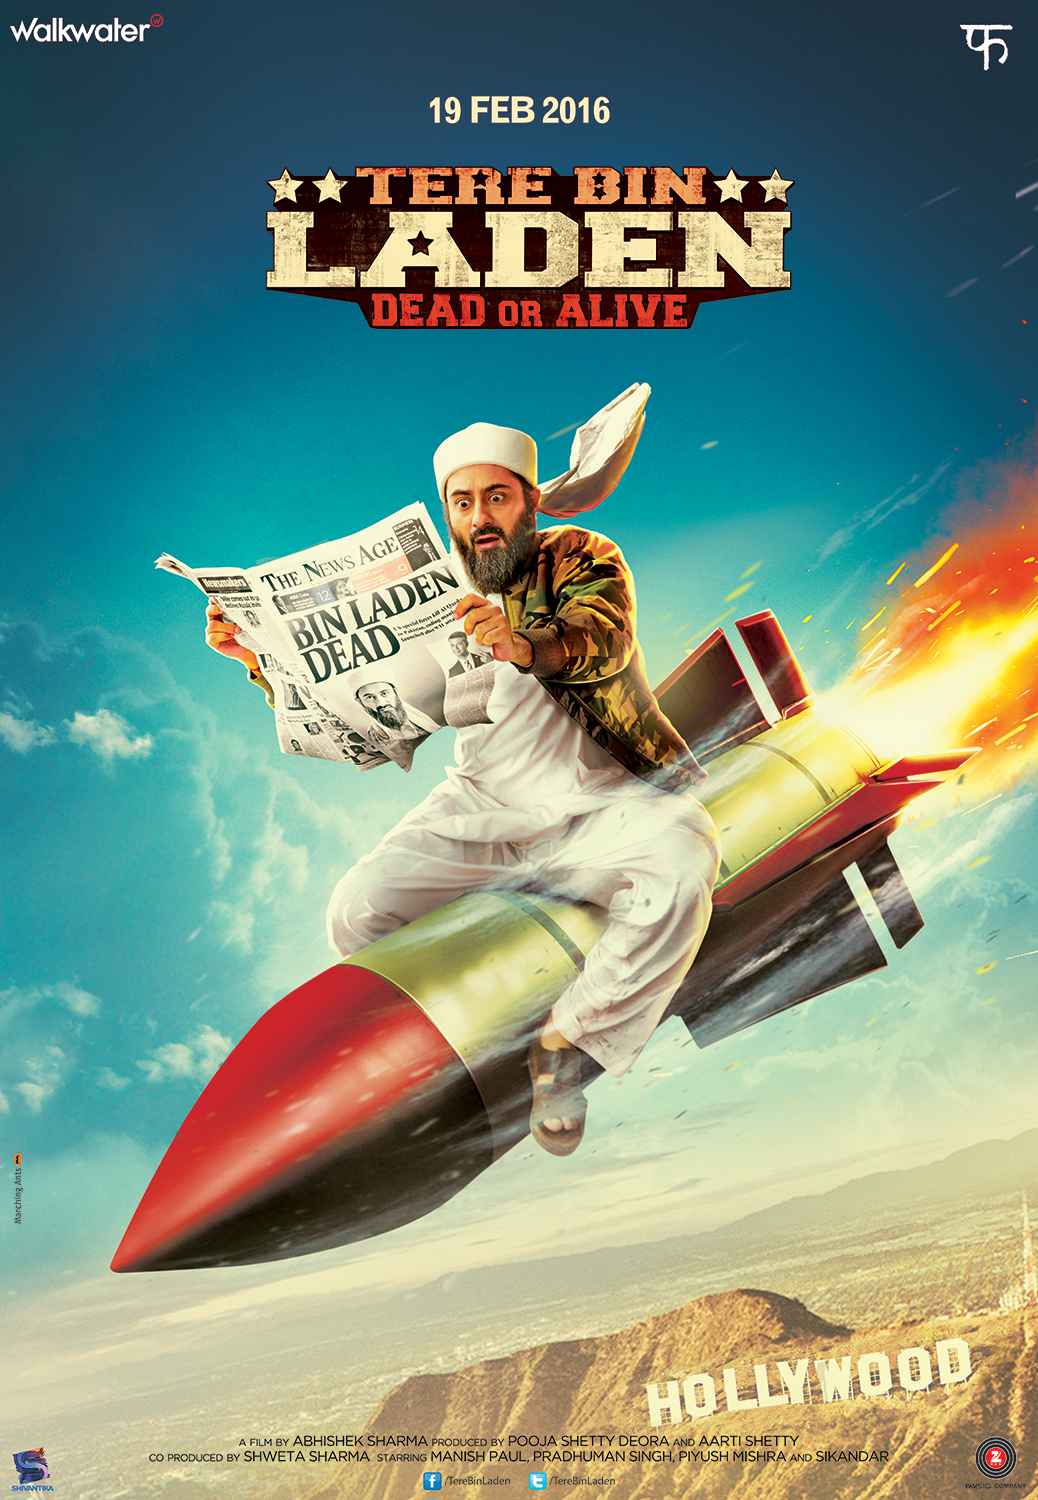 Tere Bin Laden Dead or Alive 2016 Pre DvD Full Movie